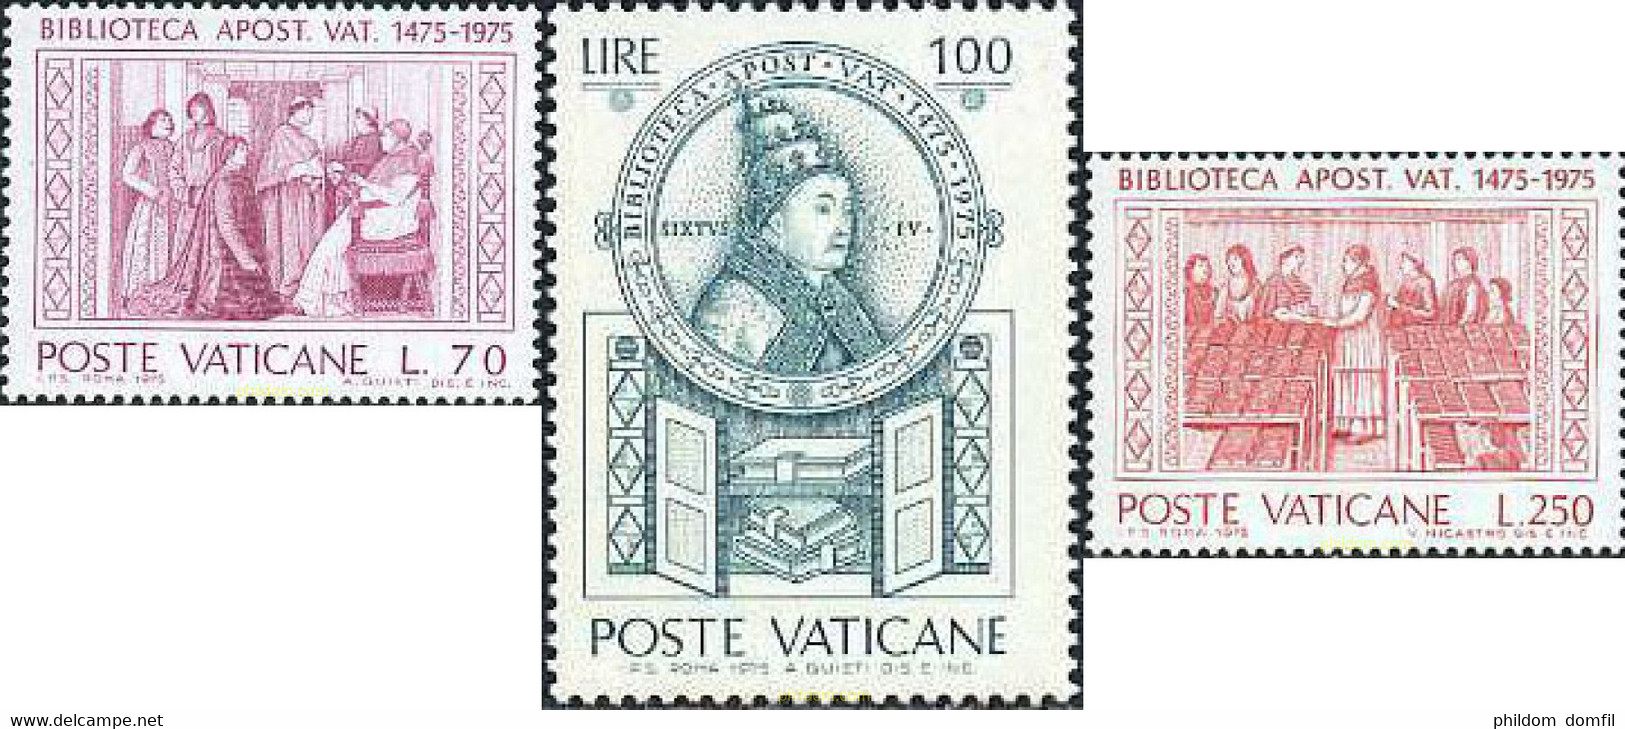 116501 MNH VATICANO 1975 5 CENTENARIO DE LA BIBLIOTECA VATICANA - Used Stamps